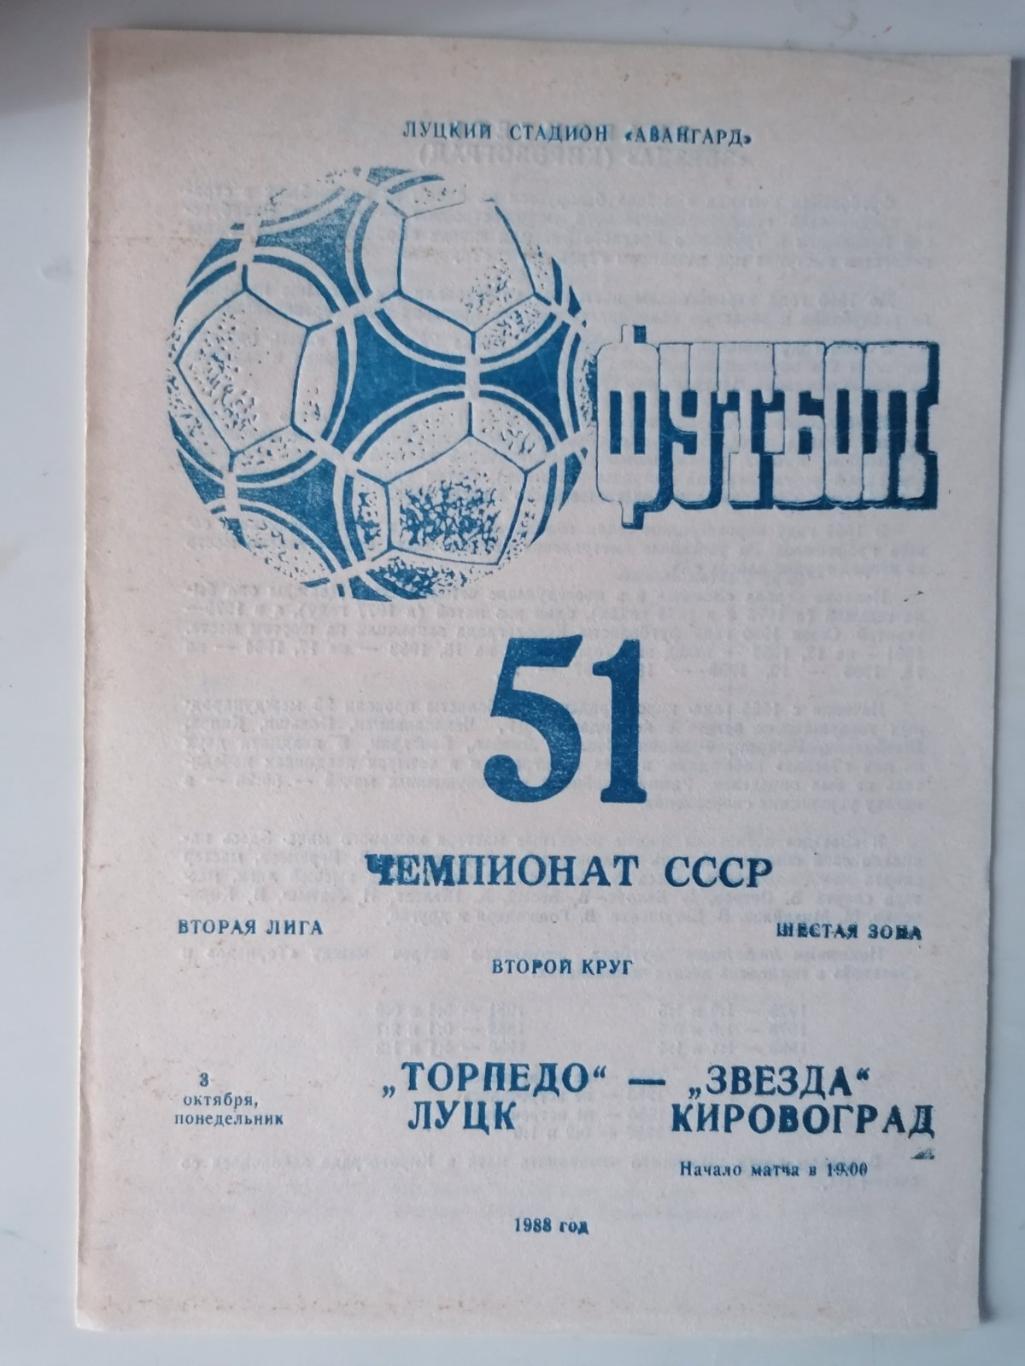 ТОРПЕДО ЛУЦК- ЗВЕЗДА КИРОВОГРАД.03.10.1988..